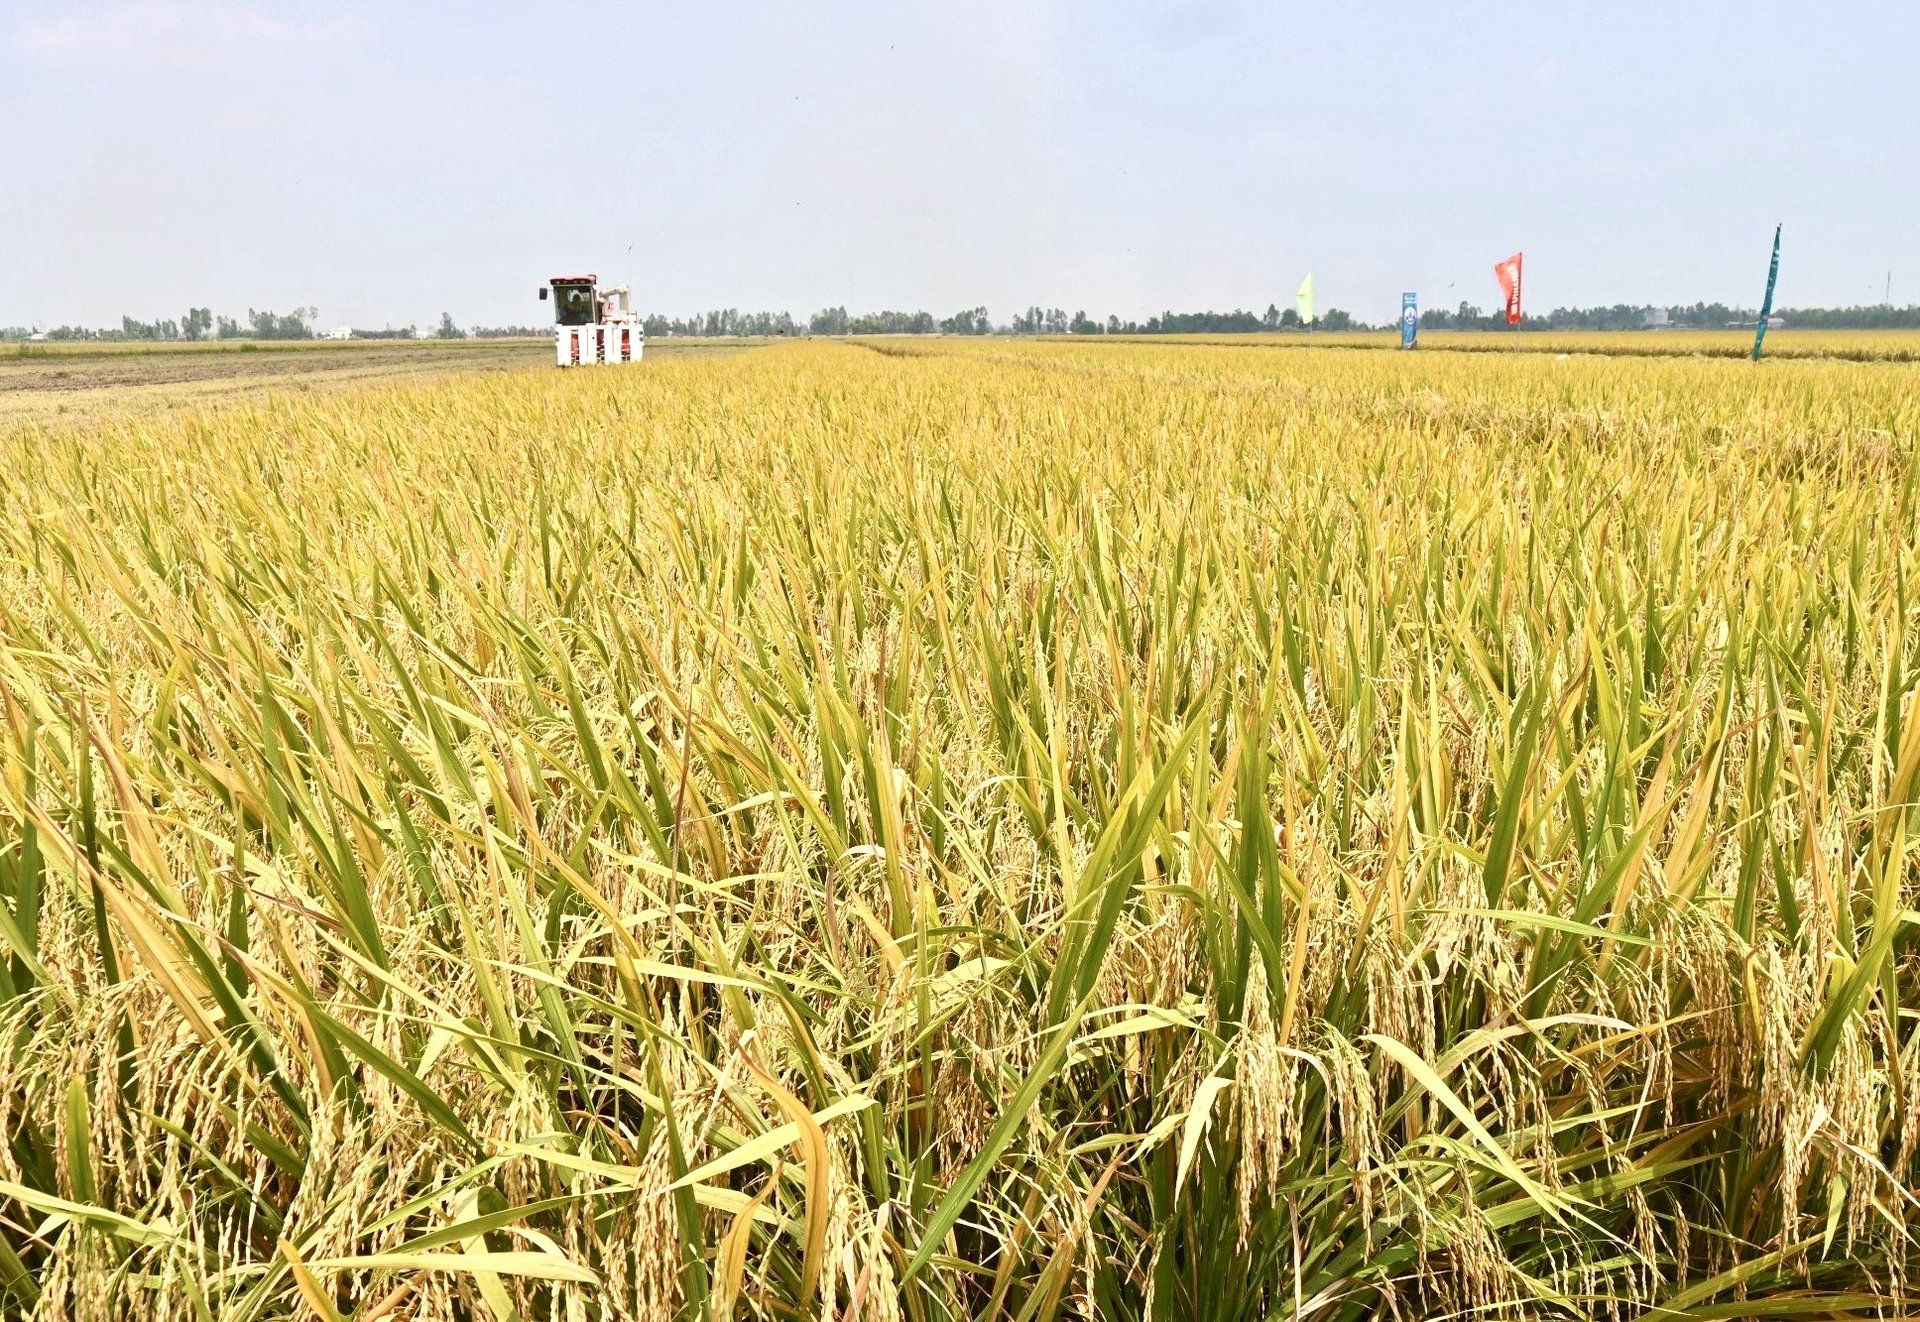 Cánh đồng tham gia Dự án TRVC của ông Nguyễn Văn Khanh, huyện Tam Nông, Đồng Tháp đang thu hoạch.